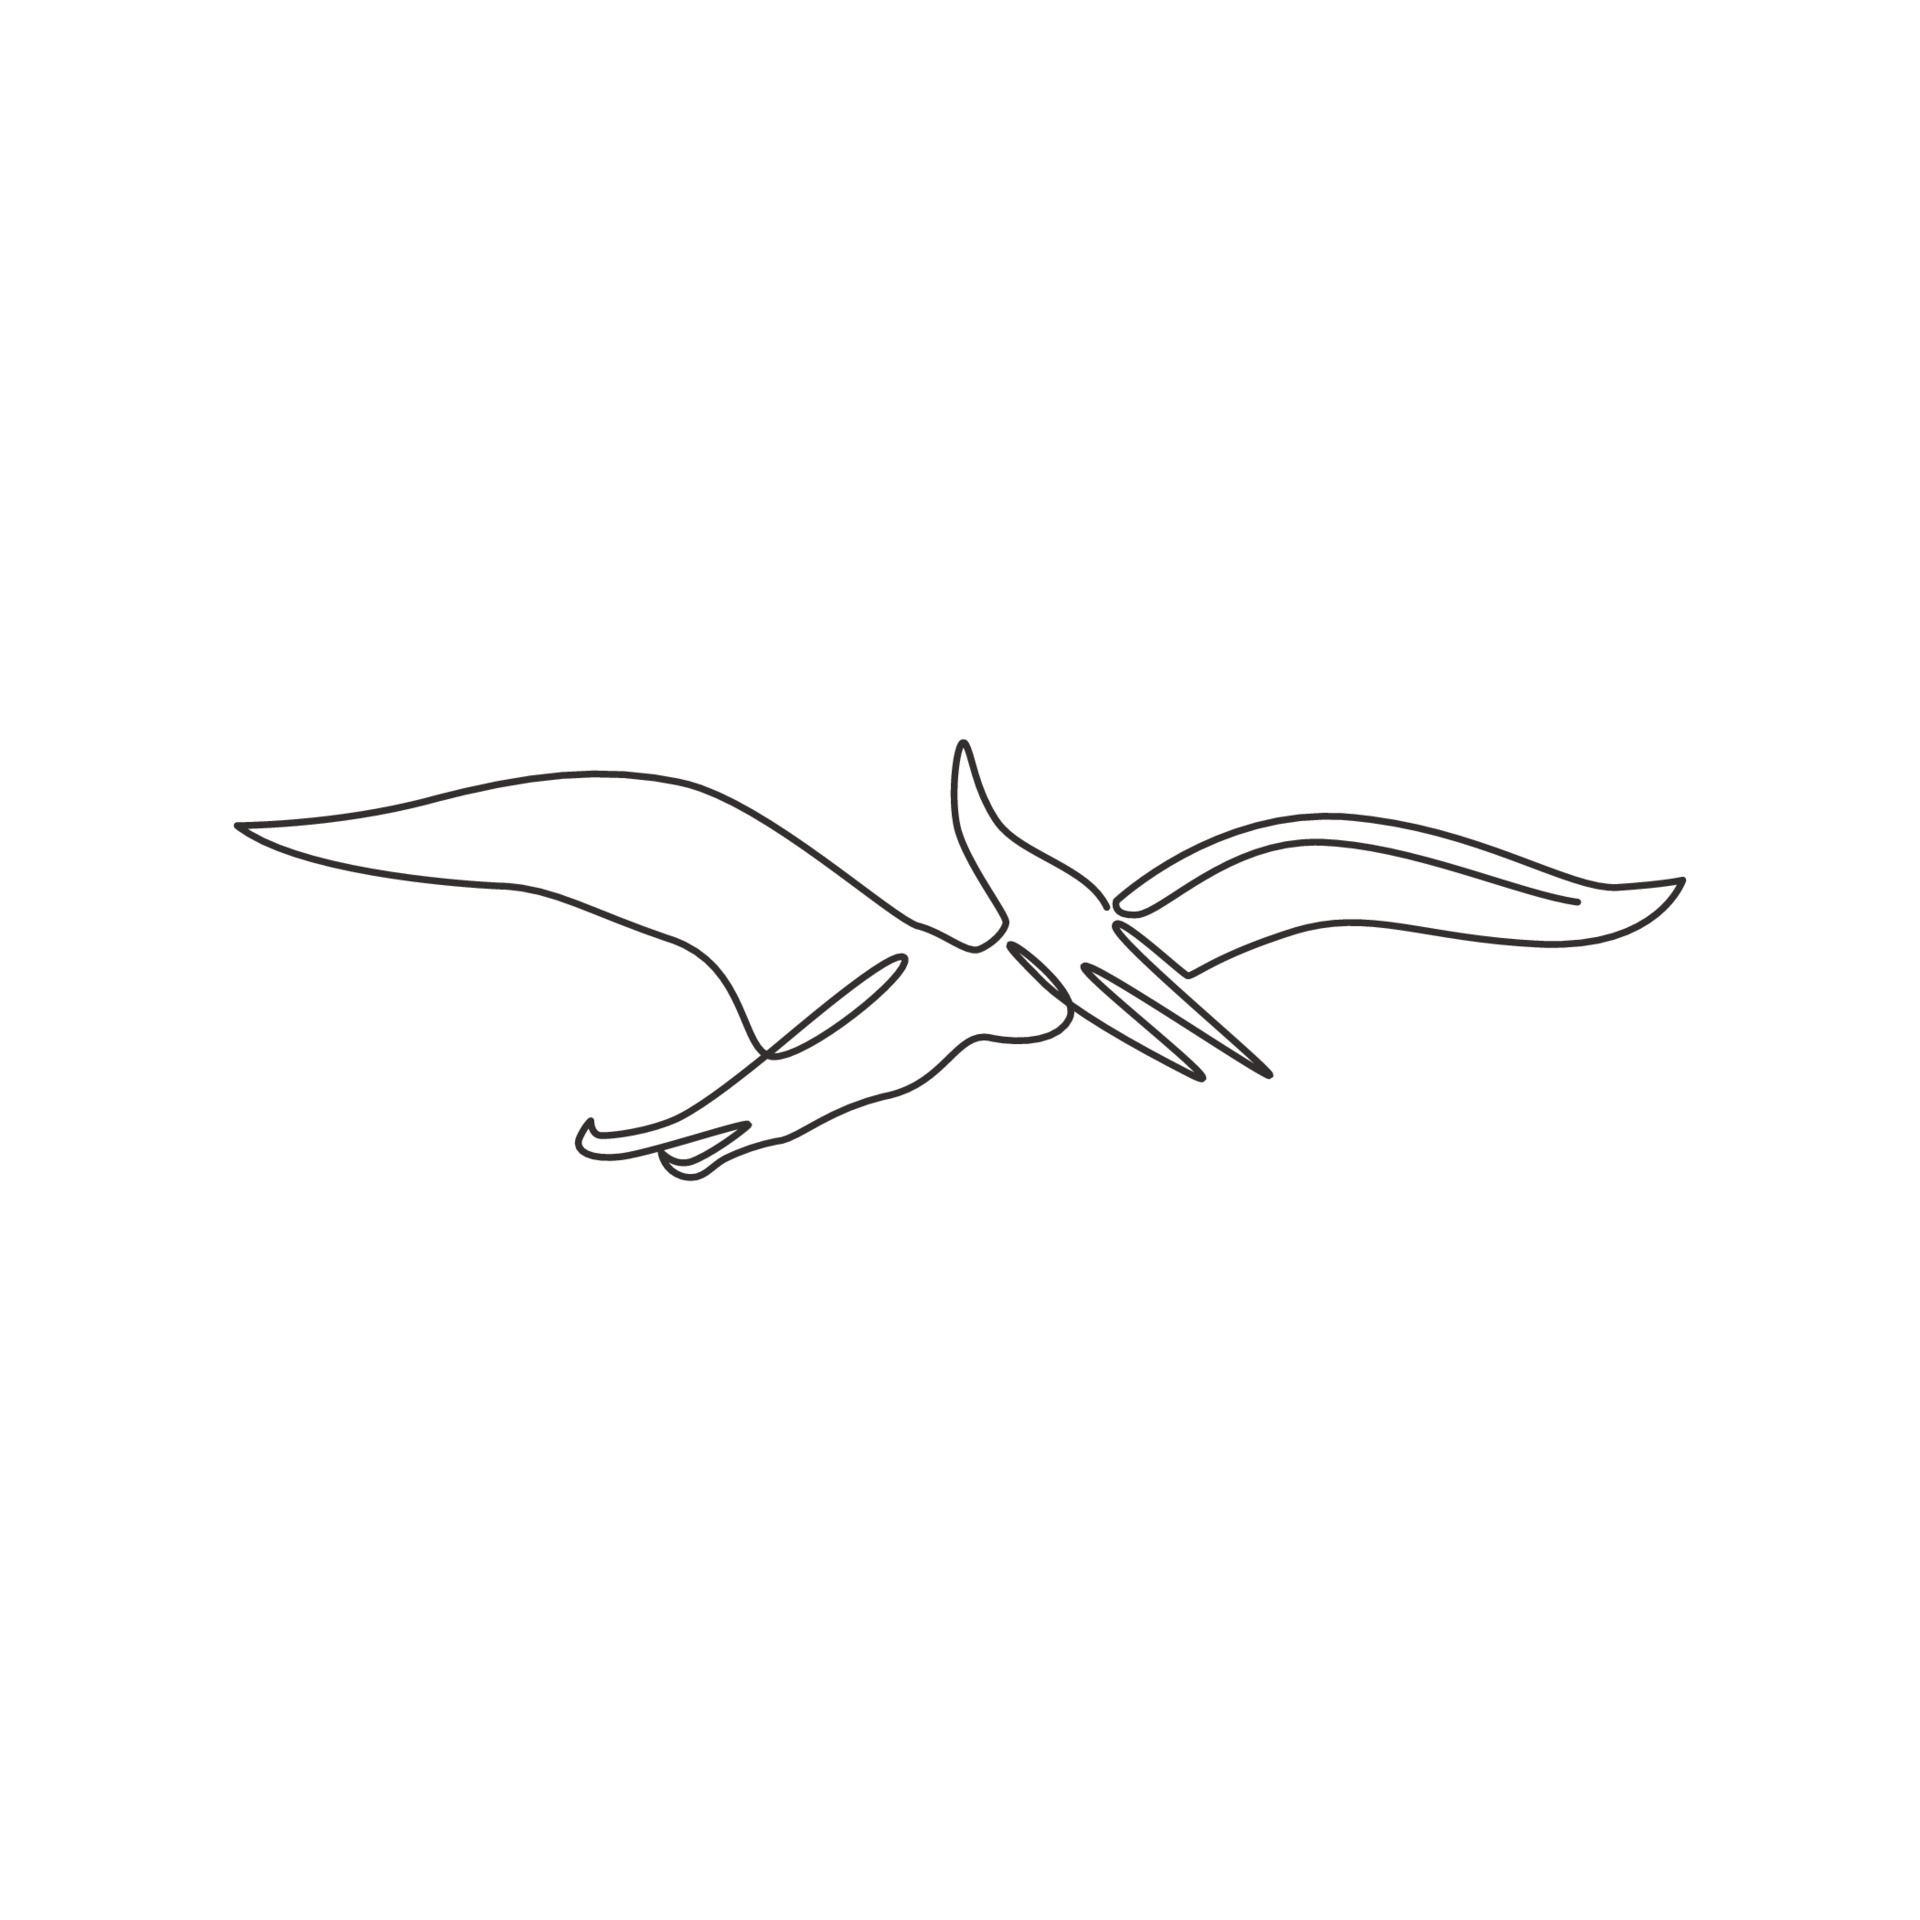 Pteranodon dinosaur sketch vector illustration  Stock Illustration  66811664  PIXTA